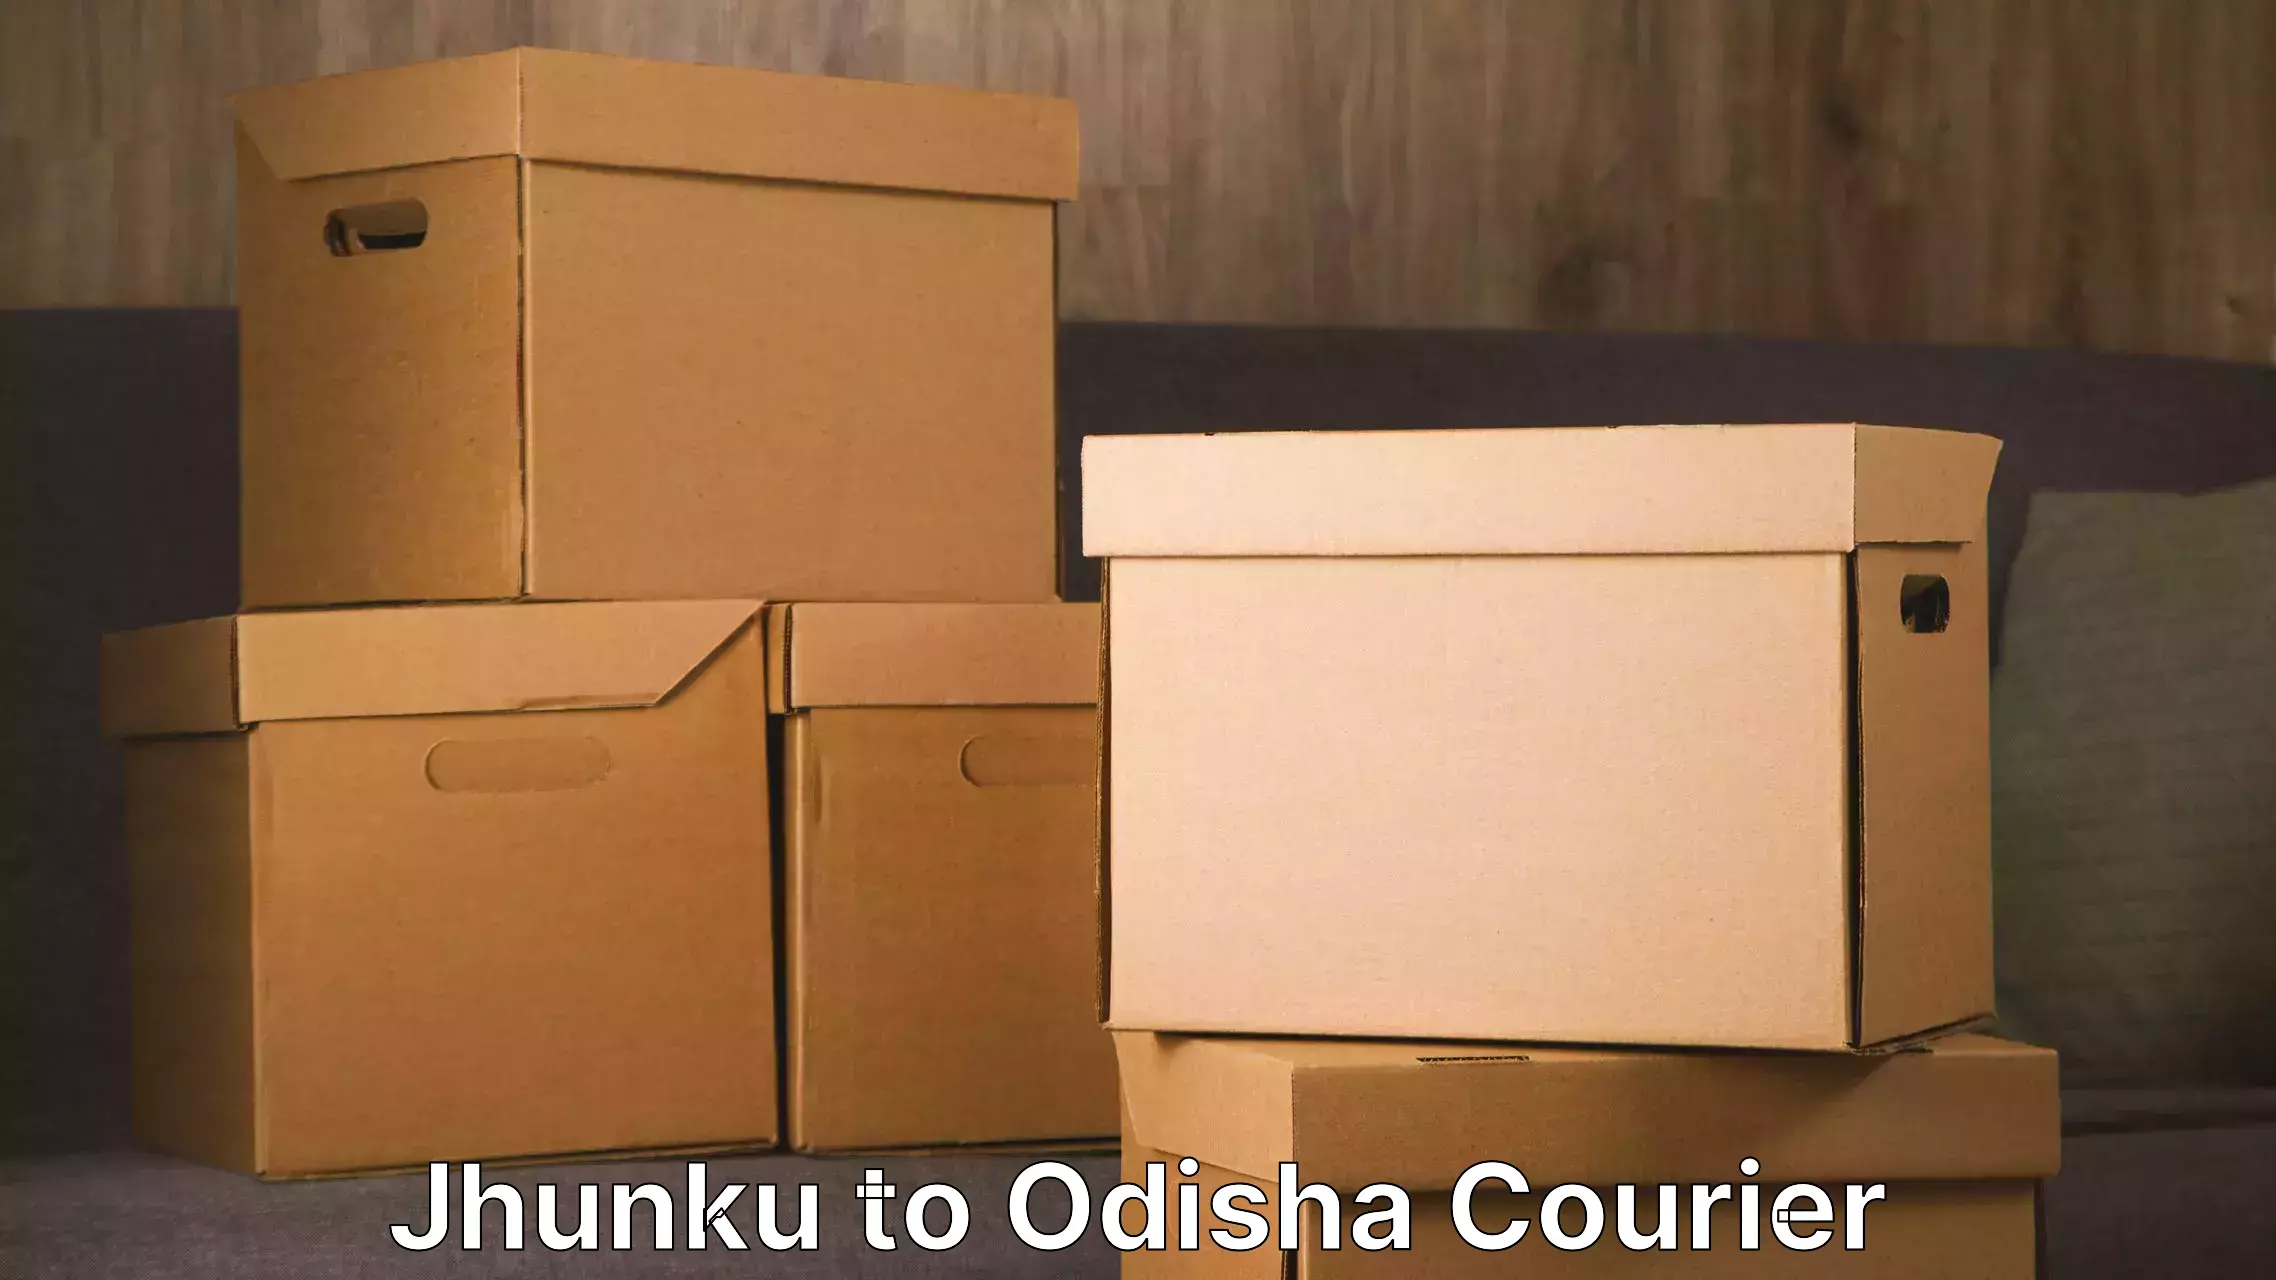 Efficient moving company Jhunku to Babujang